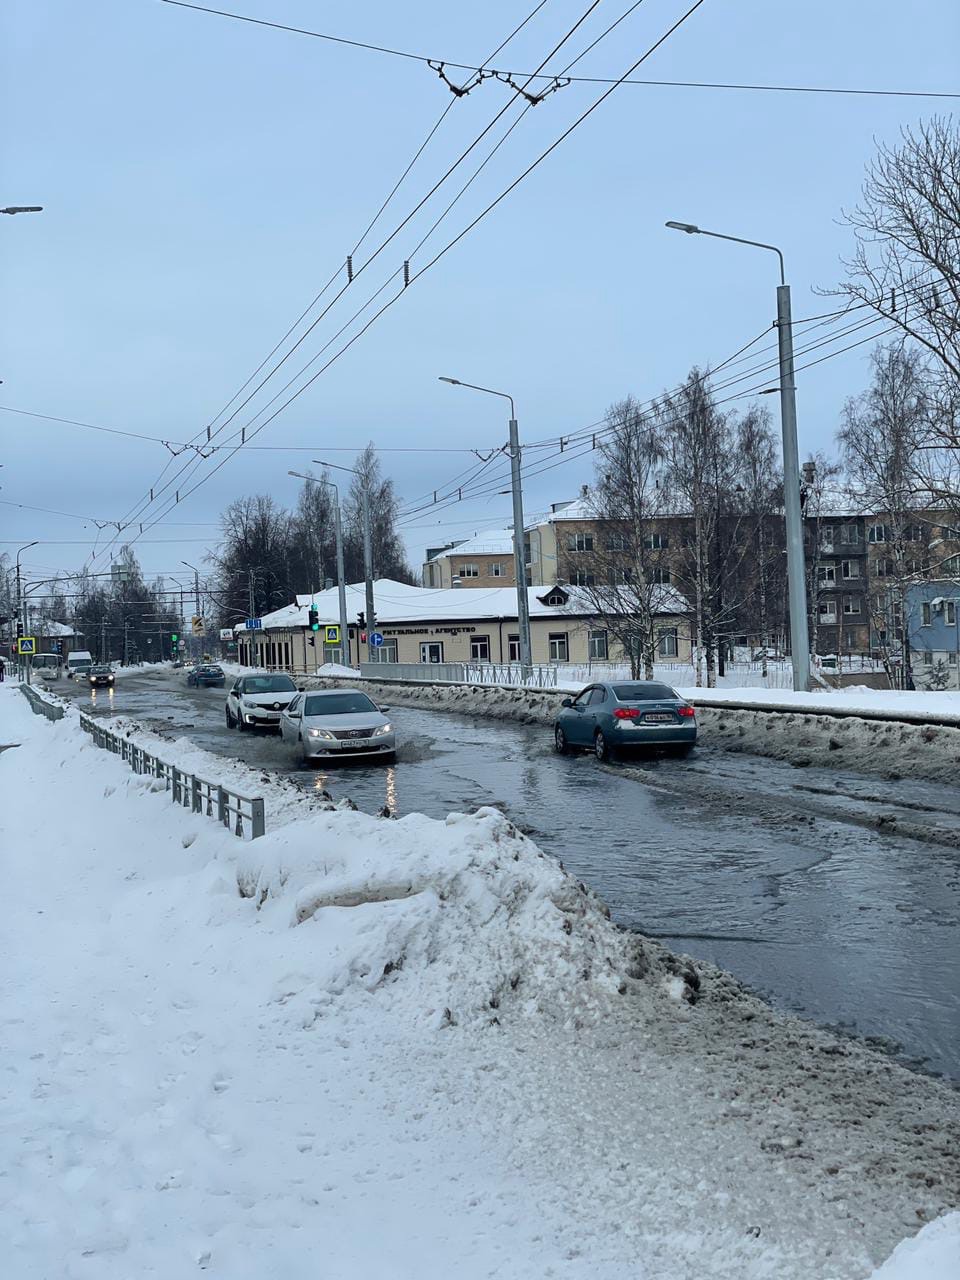 Коммунальщики расчистили колодцы, из-за засора которых затопило центр Петрозаводска